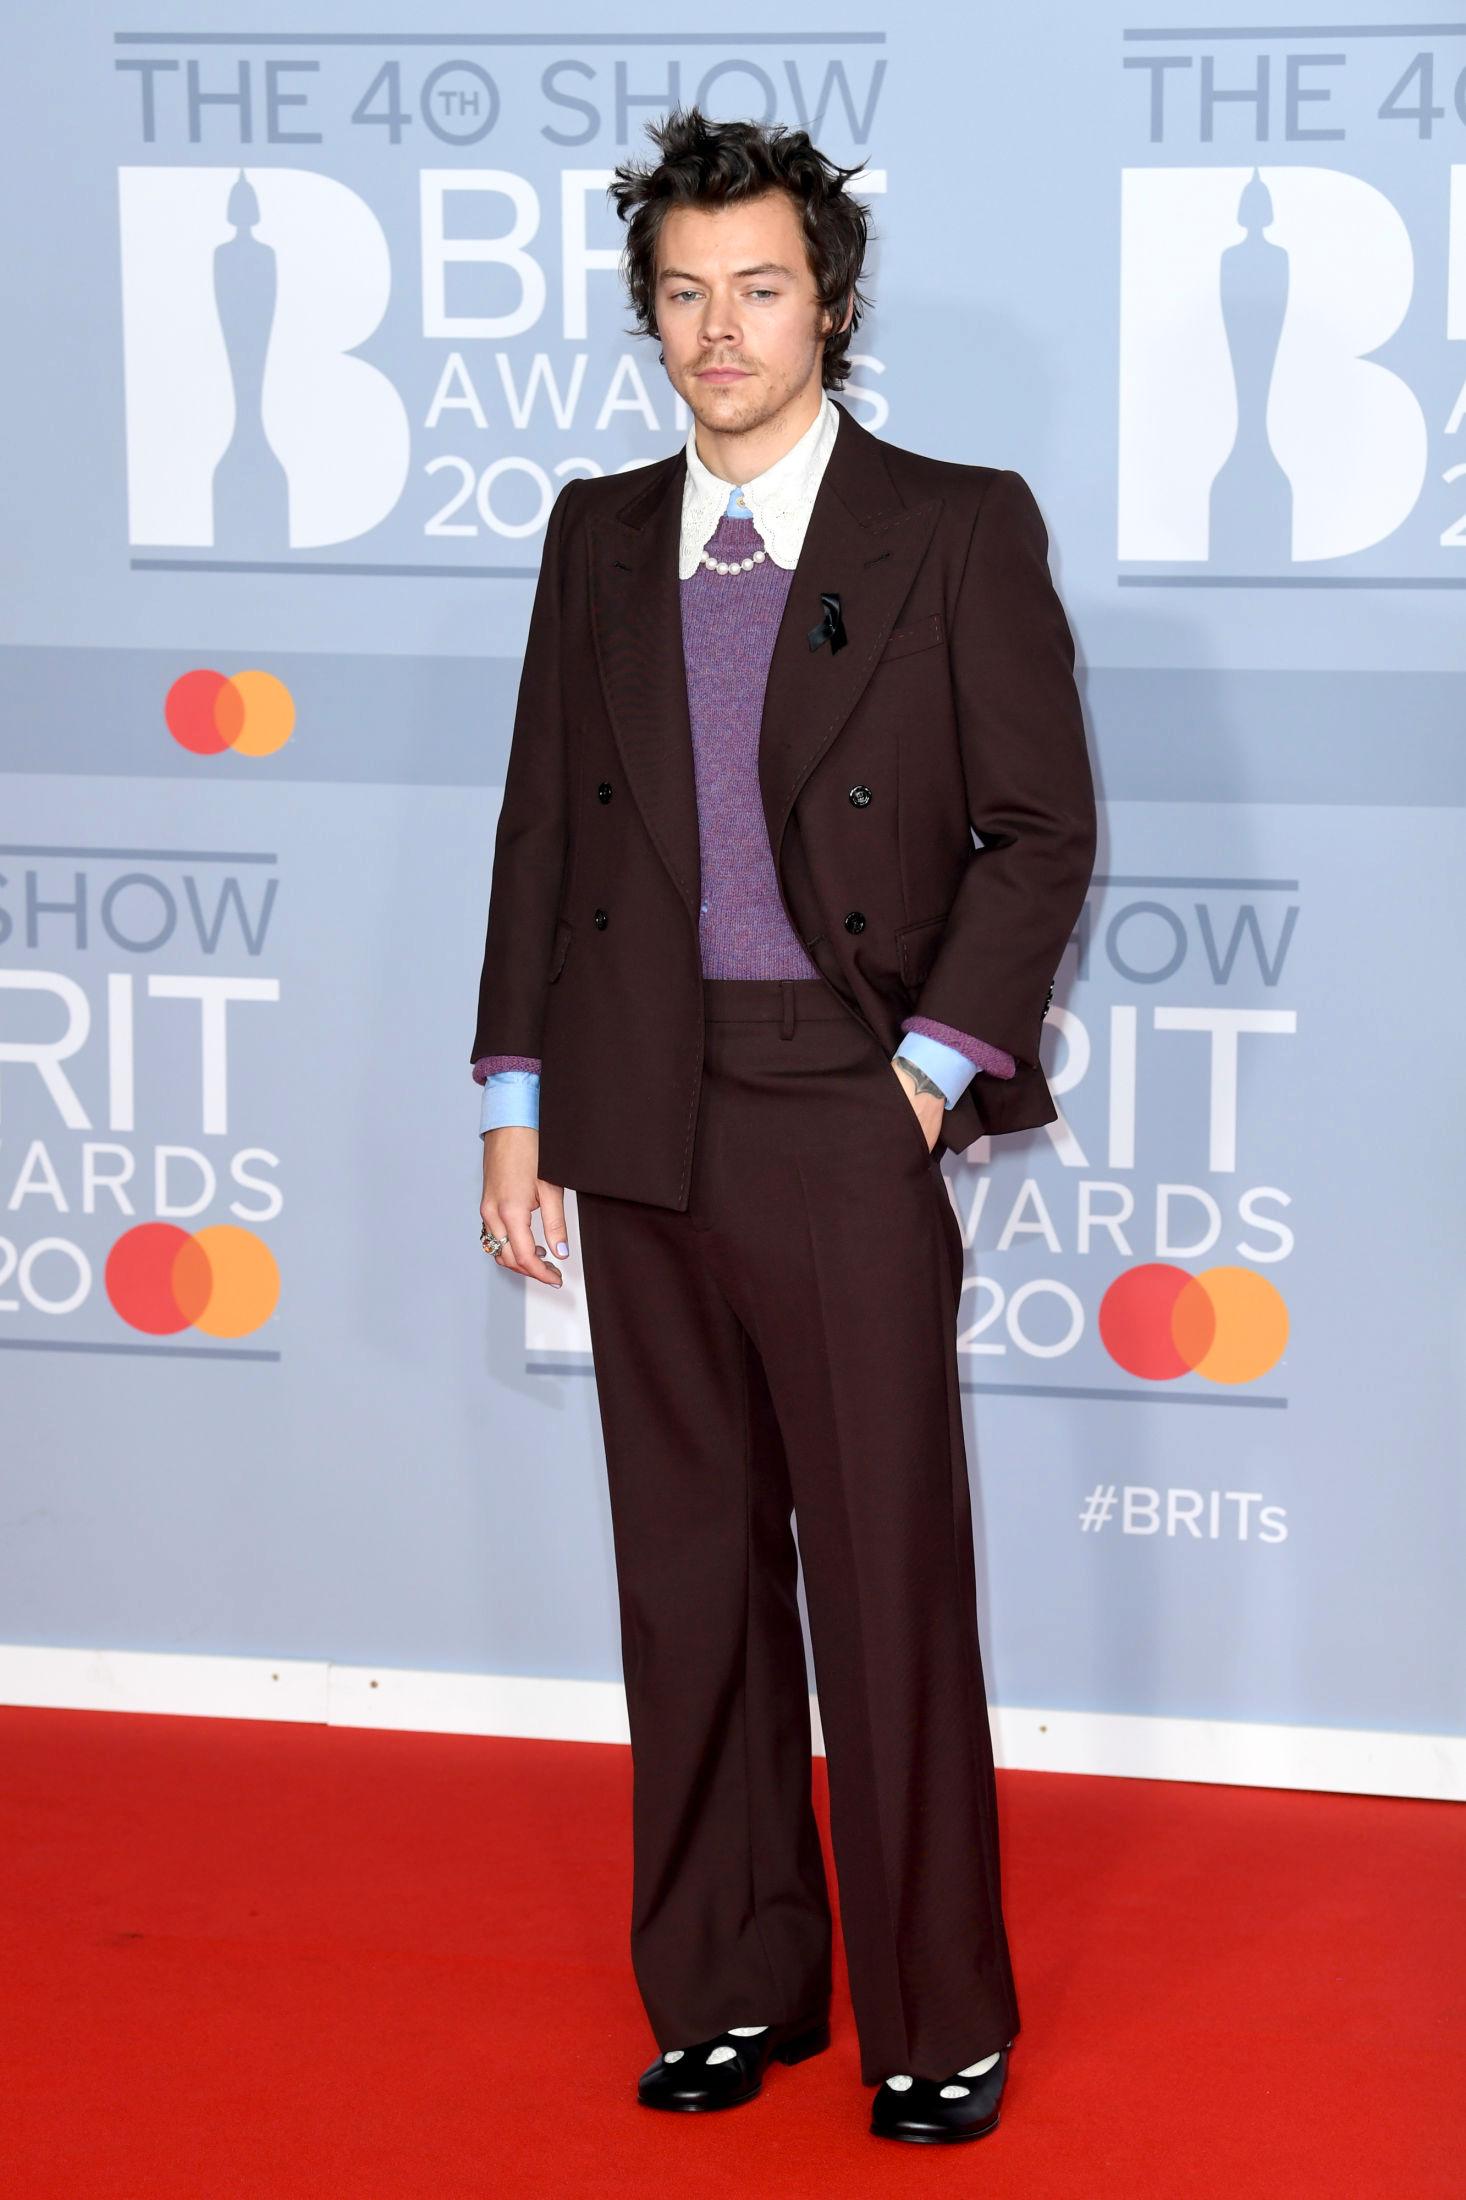 OUTFIT GOALS: Harry Styles var kledd i dress med en skikkelig trendskjorte med stor krage under Brit Awards i 2020. Less også merke til at han såkalte Mary Janes på føttene. Foto: Doug Peters/PA Photos.